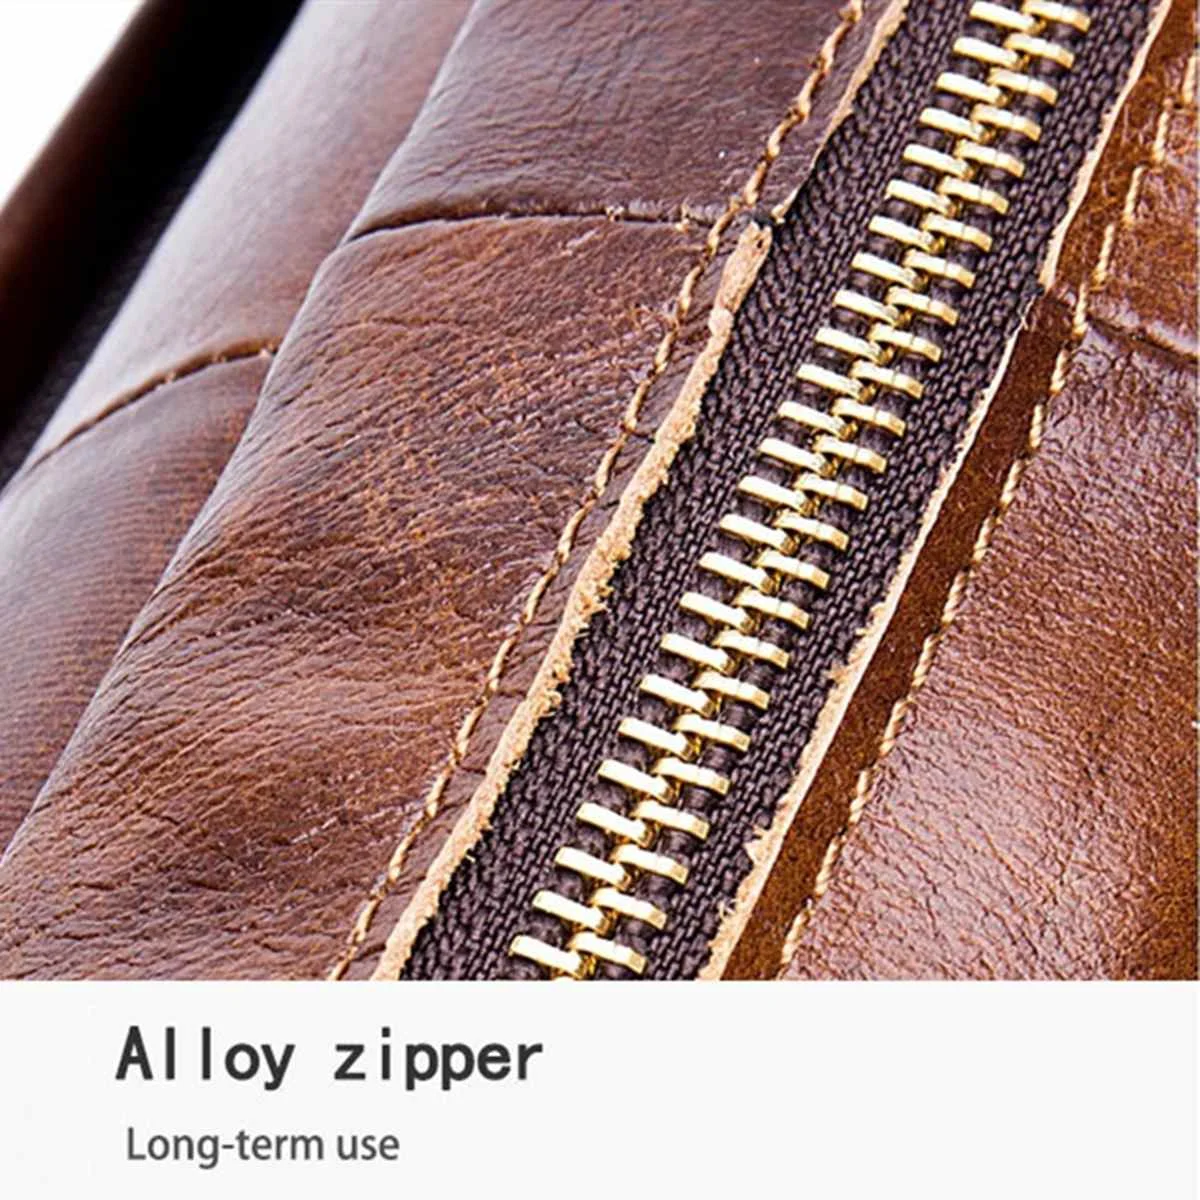 Мужской портфель s laurce из натуральной кожи, винтажный портфель для ноутбука, мужские сумки на плечо для компьютера, повседневная мужская